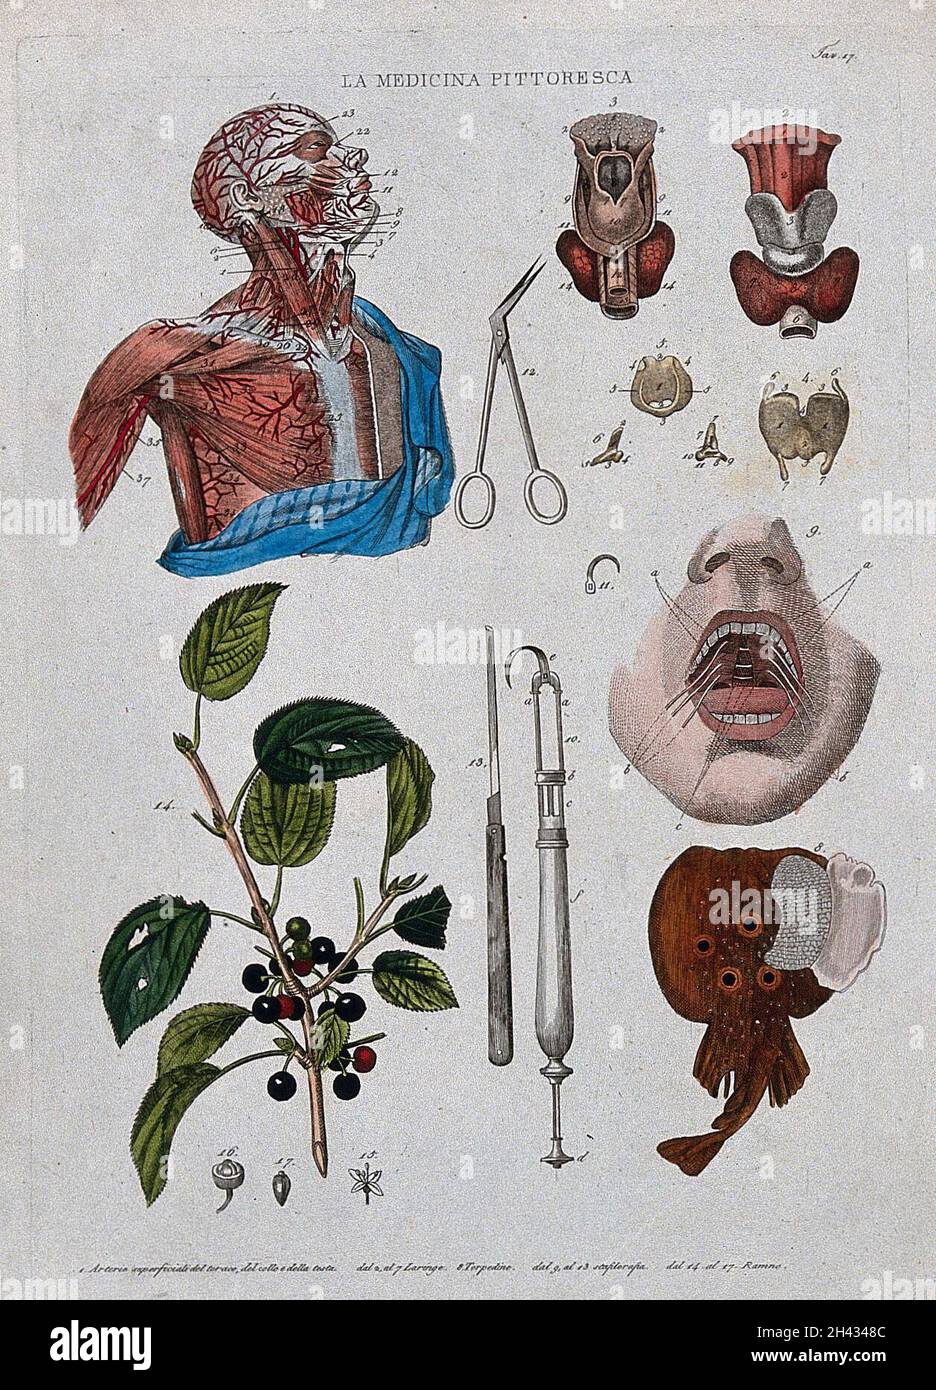 Anatomía y botánica; parte superior izquierda, cabeza disecada pecho que muestra las arterias; parte superior central; tijeras; parte superior derecha, laringe; abajo a la izquierda, follaje; abajo al centro, instrumento médico;